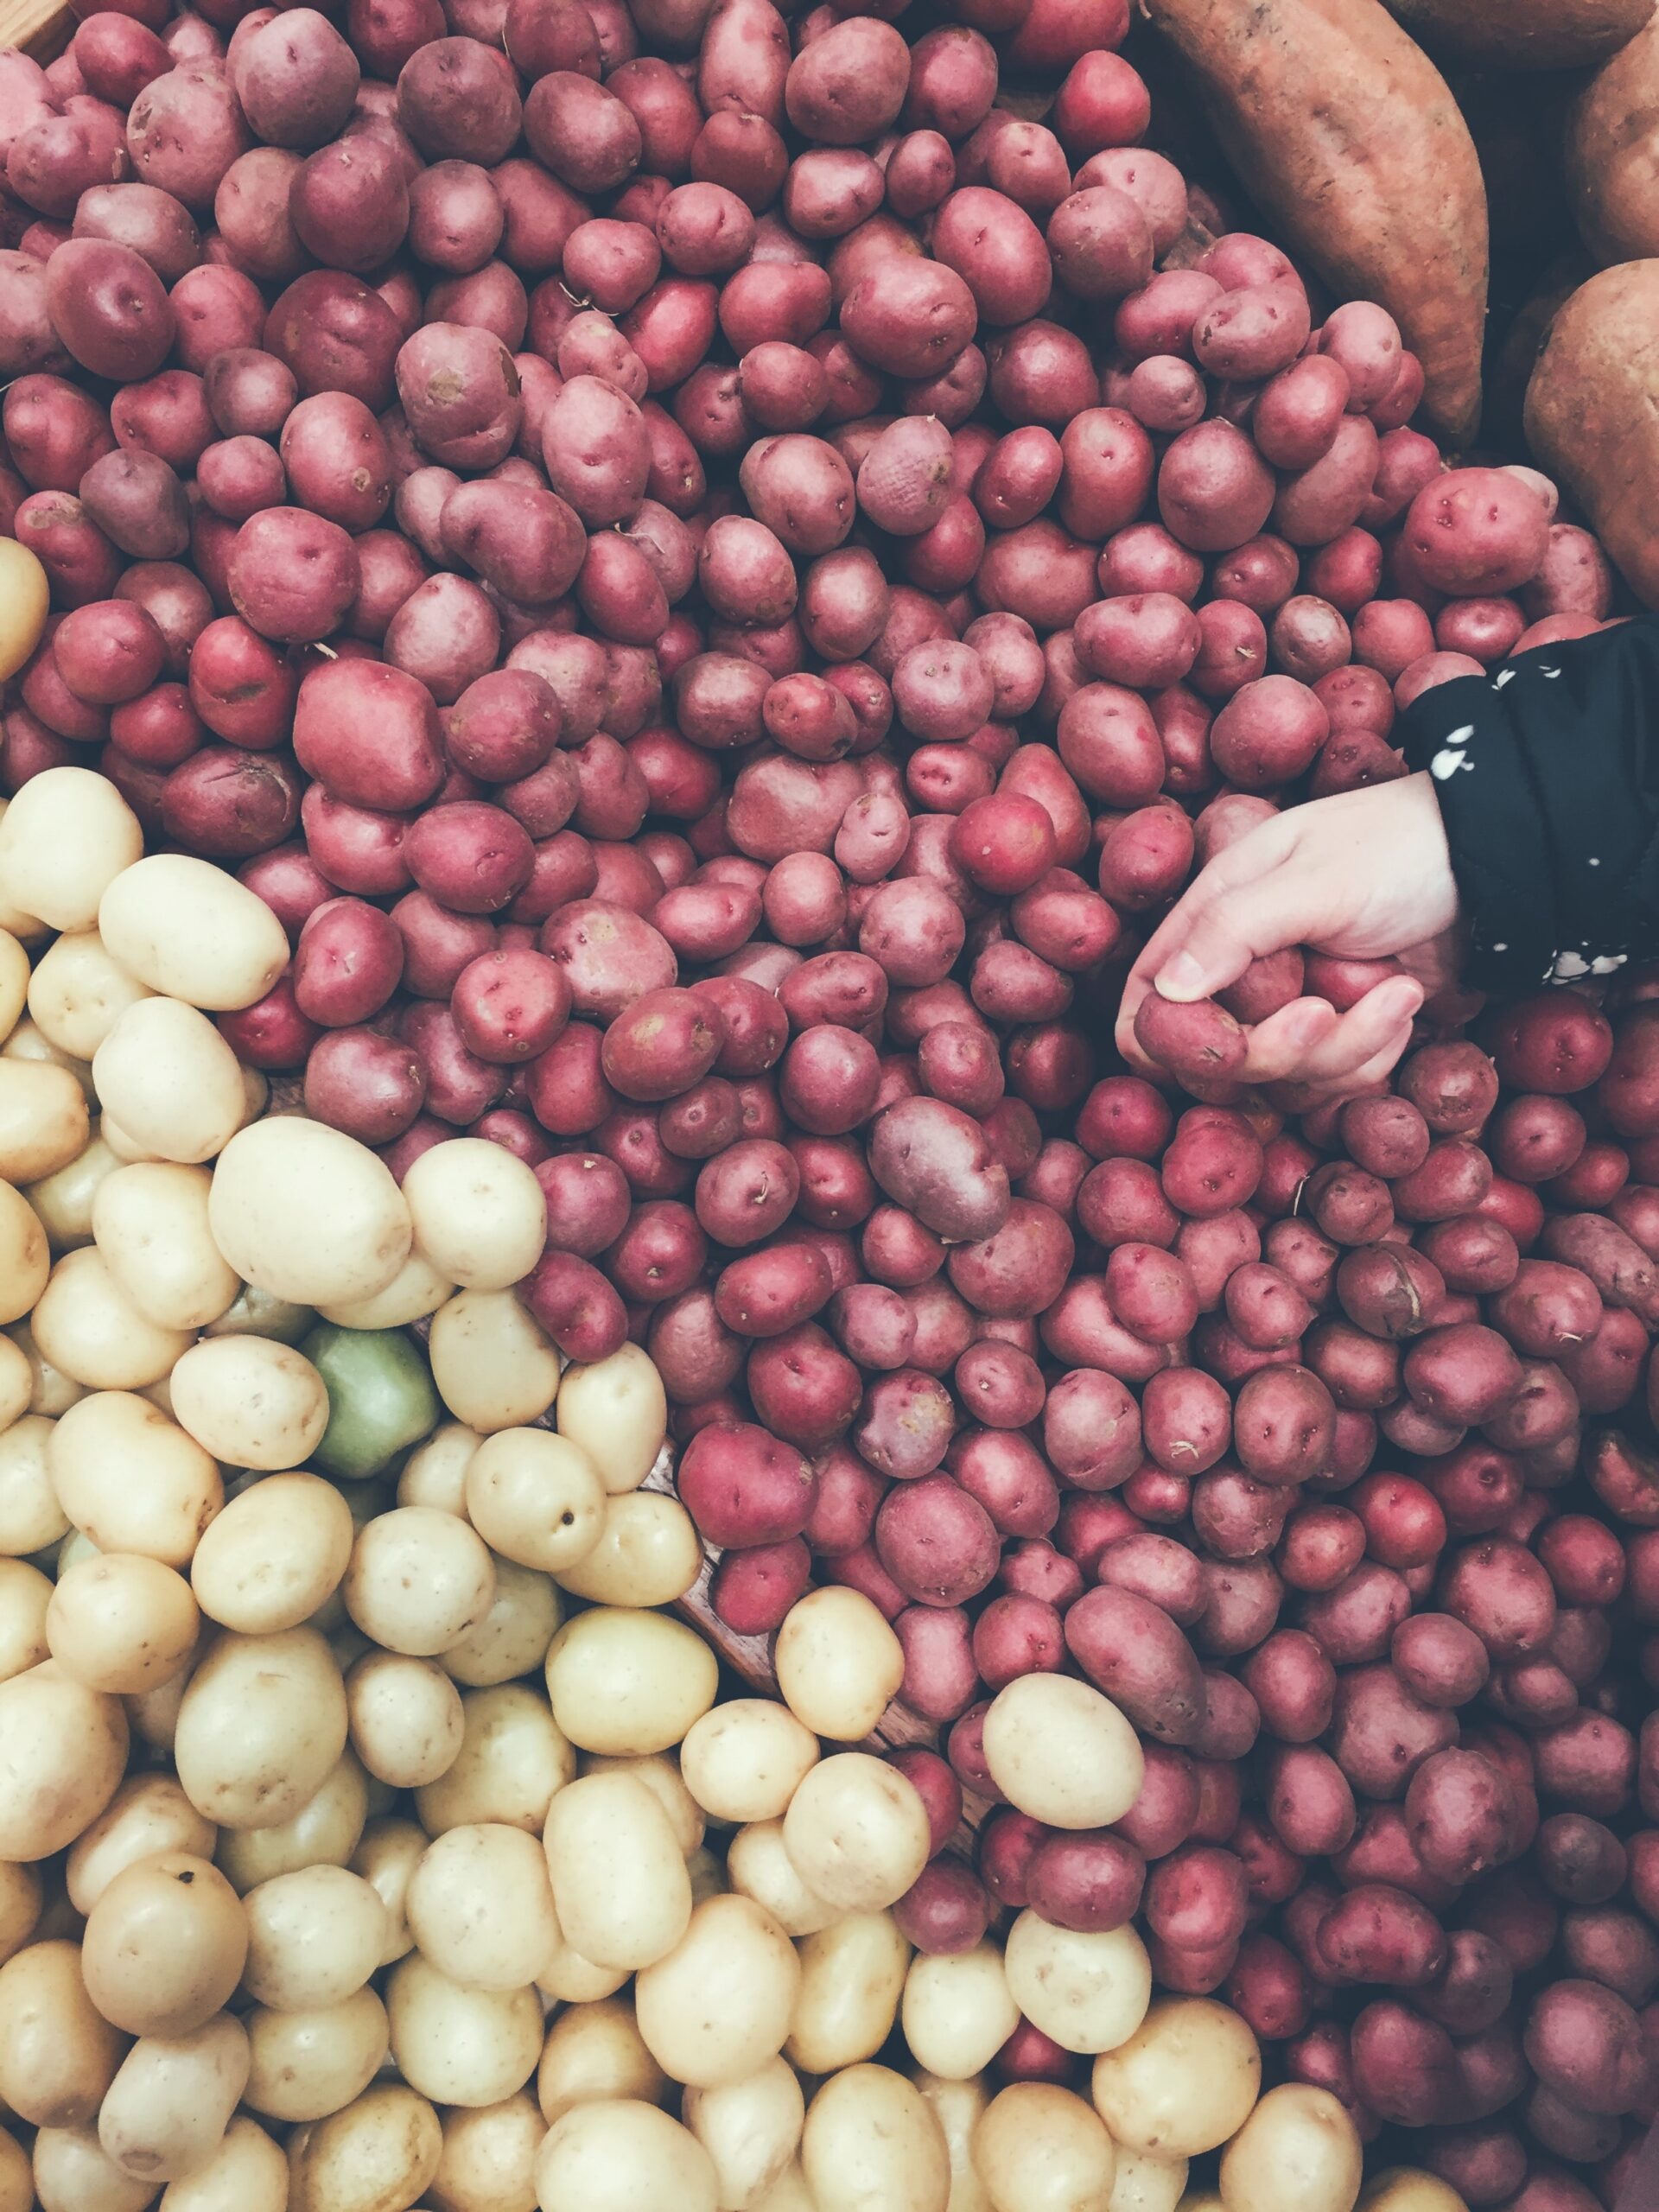 Potatoes-NEWRED B SIZE per lb